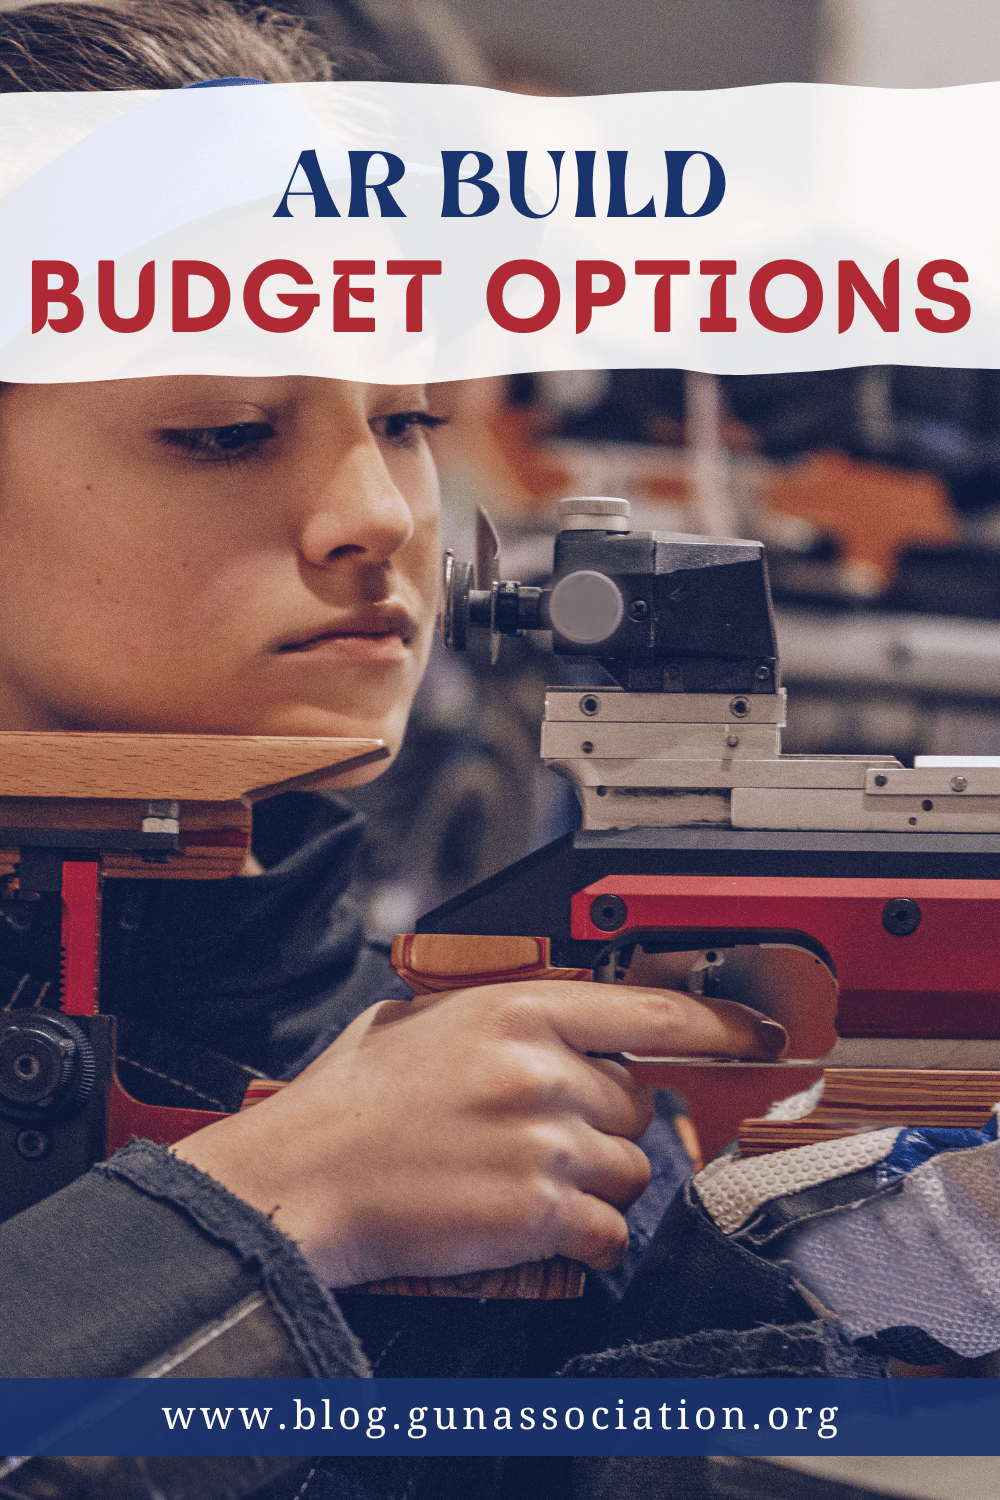 AR build budget options